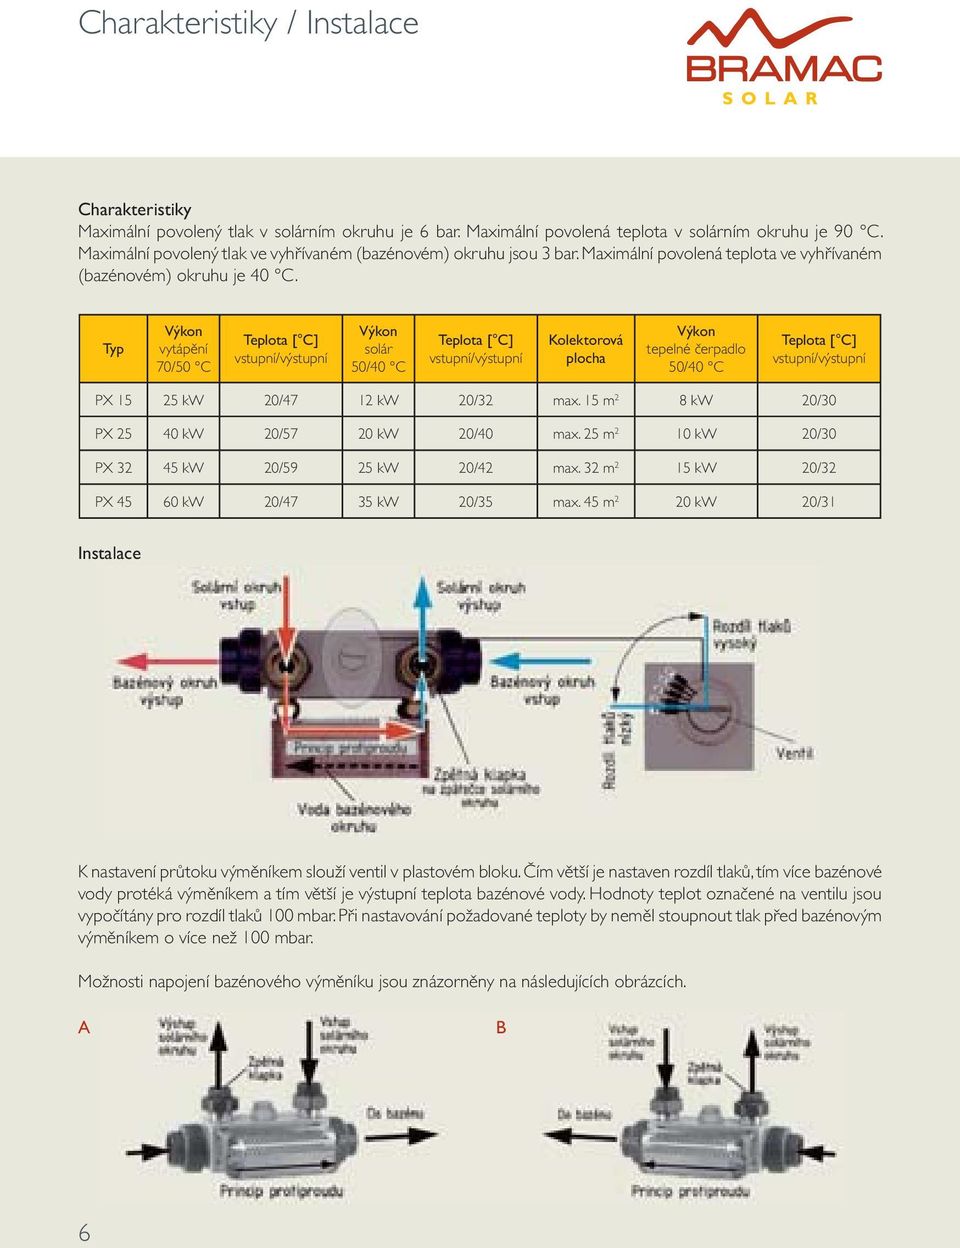 Typ Výkon vytápění 70/50 C Teplota [ C] vstupní/výstupní Výkon solár 50/40 C Teplota [ C] vstupní/výstupní Kolektorová plocha Výkon tepelné čerpadlo 50/40 C Teplota [ C] vstupní/výstupní PX 15 25 kw